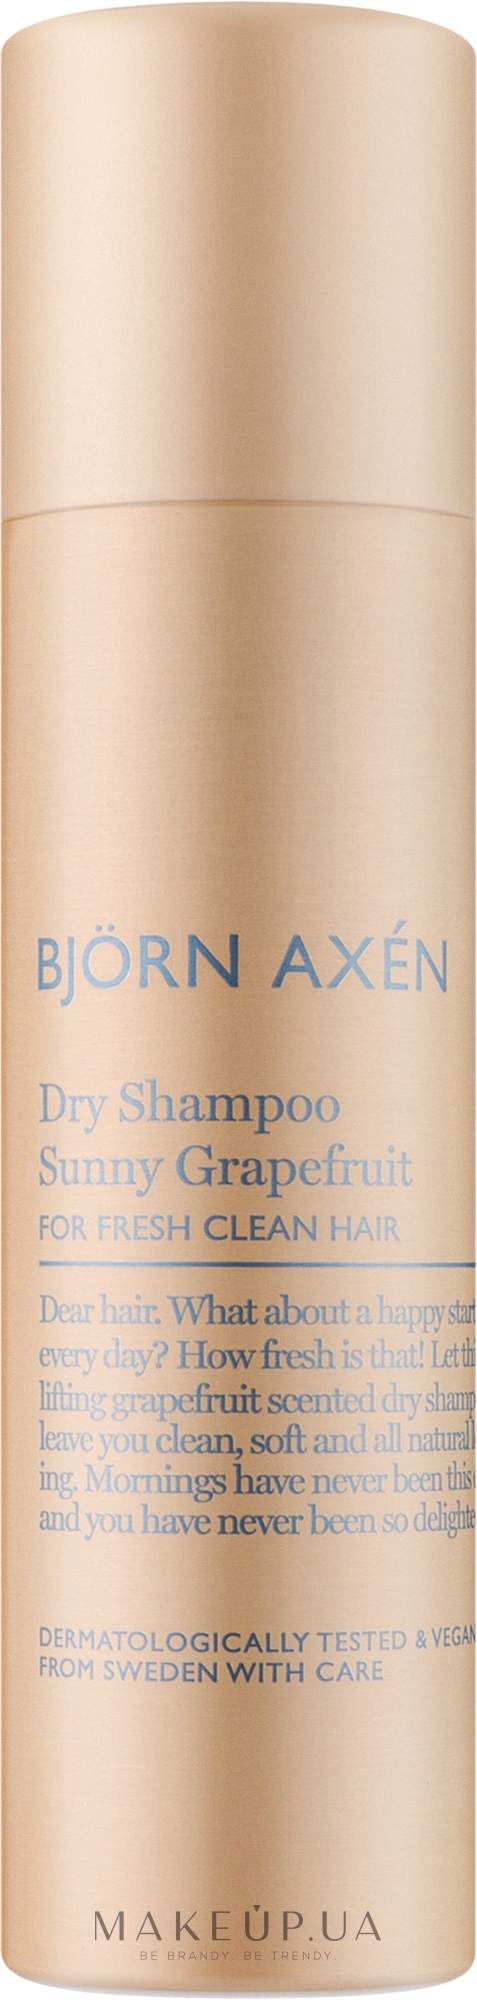 Сухий шампунь з ароматом грейпфрута - BjOrn AxEn Dry Shampoo Sunny Grapefruit — фото 150ml